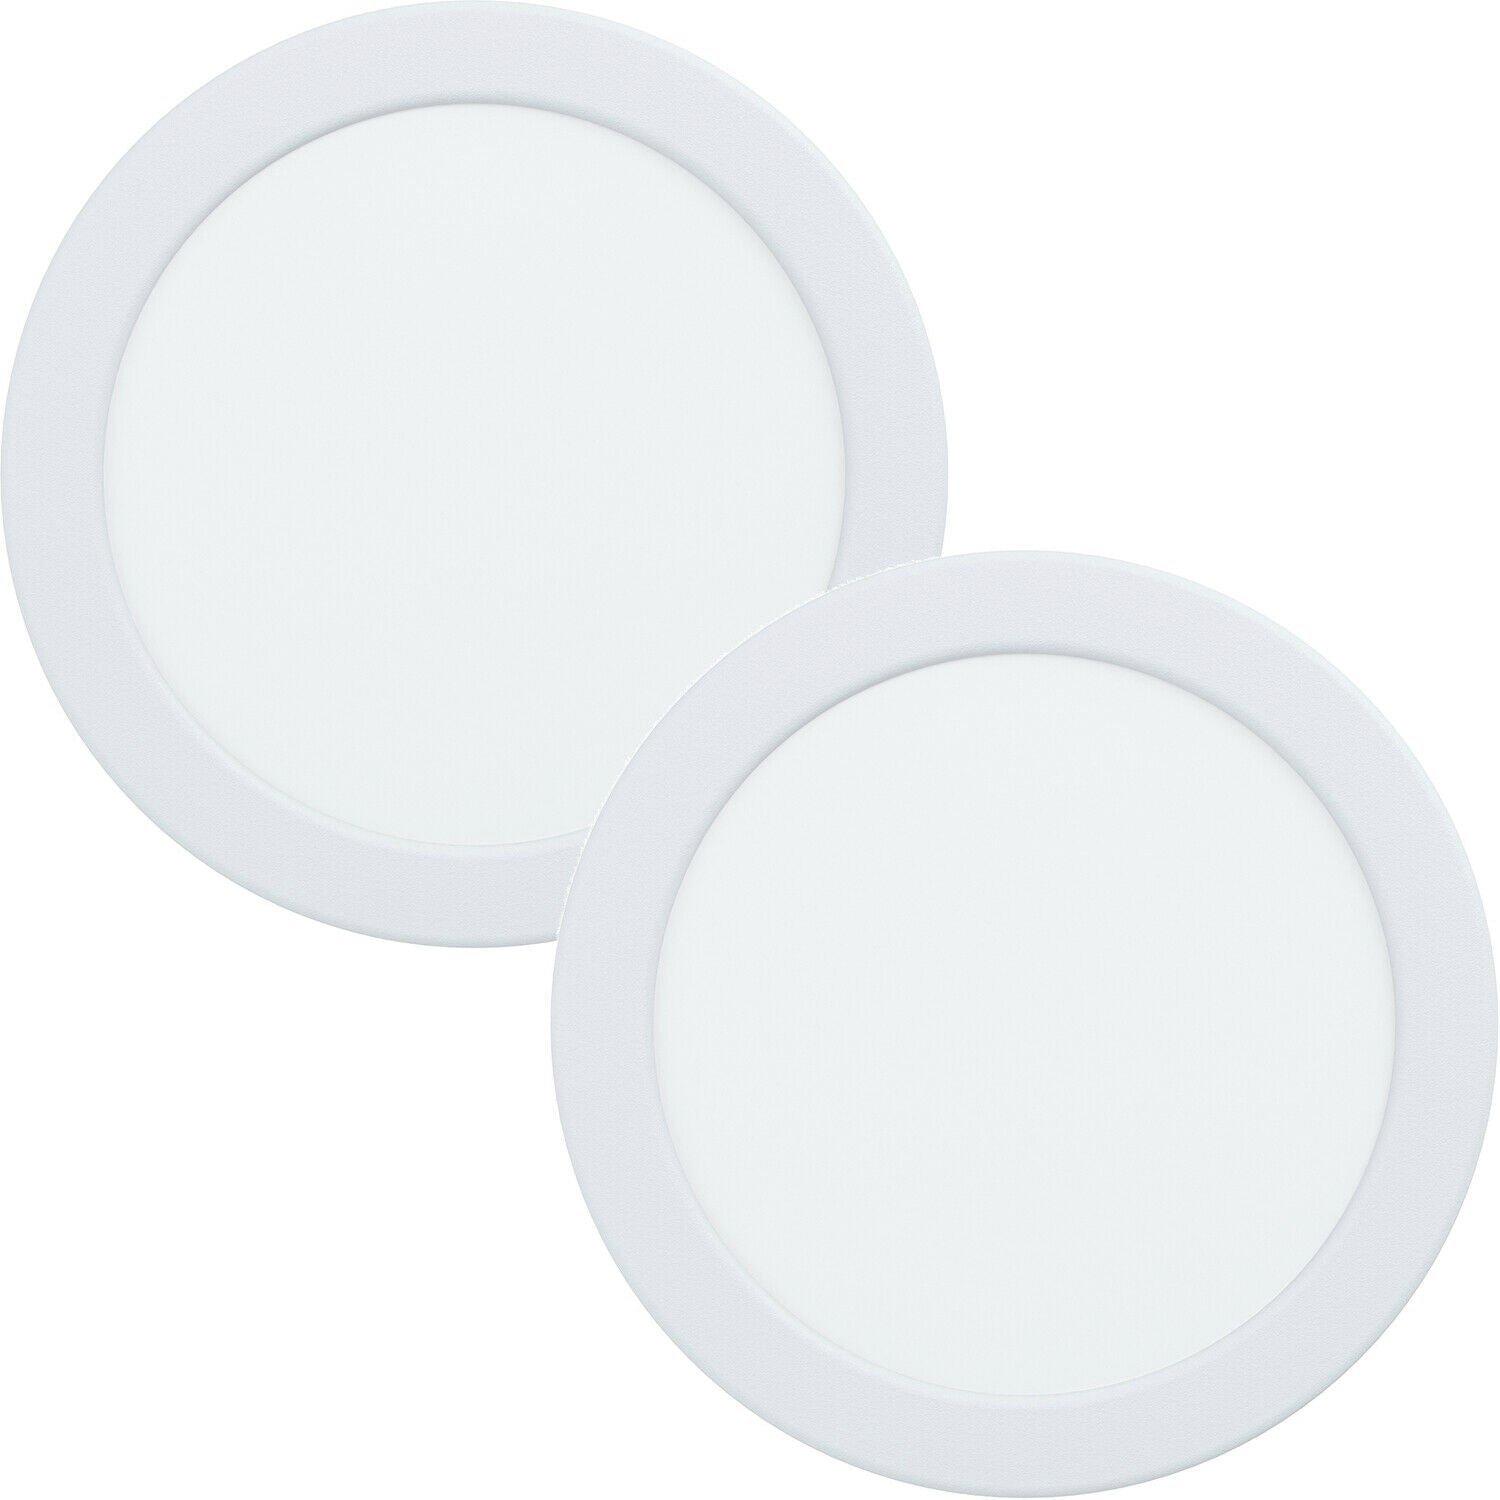 2 PACK Wall / Ceiling Flush Downlight White Round Spotlight 10.5W Built in LED